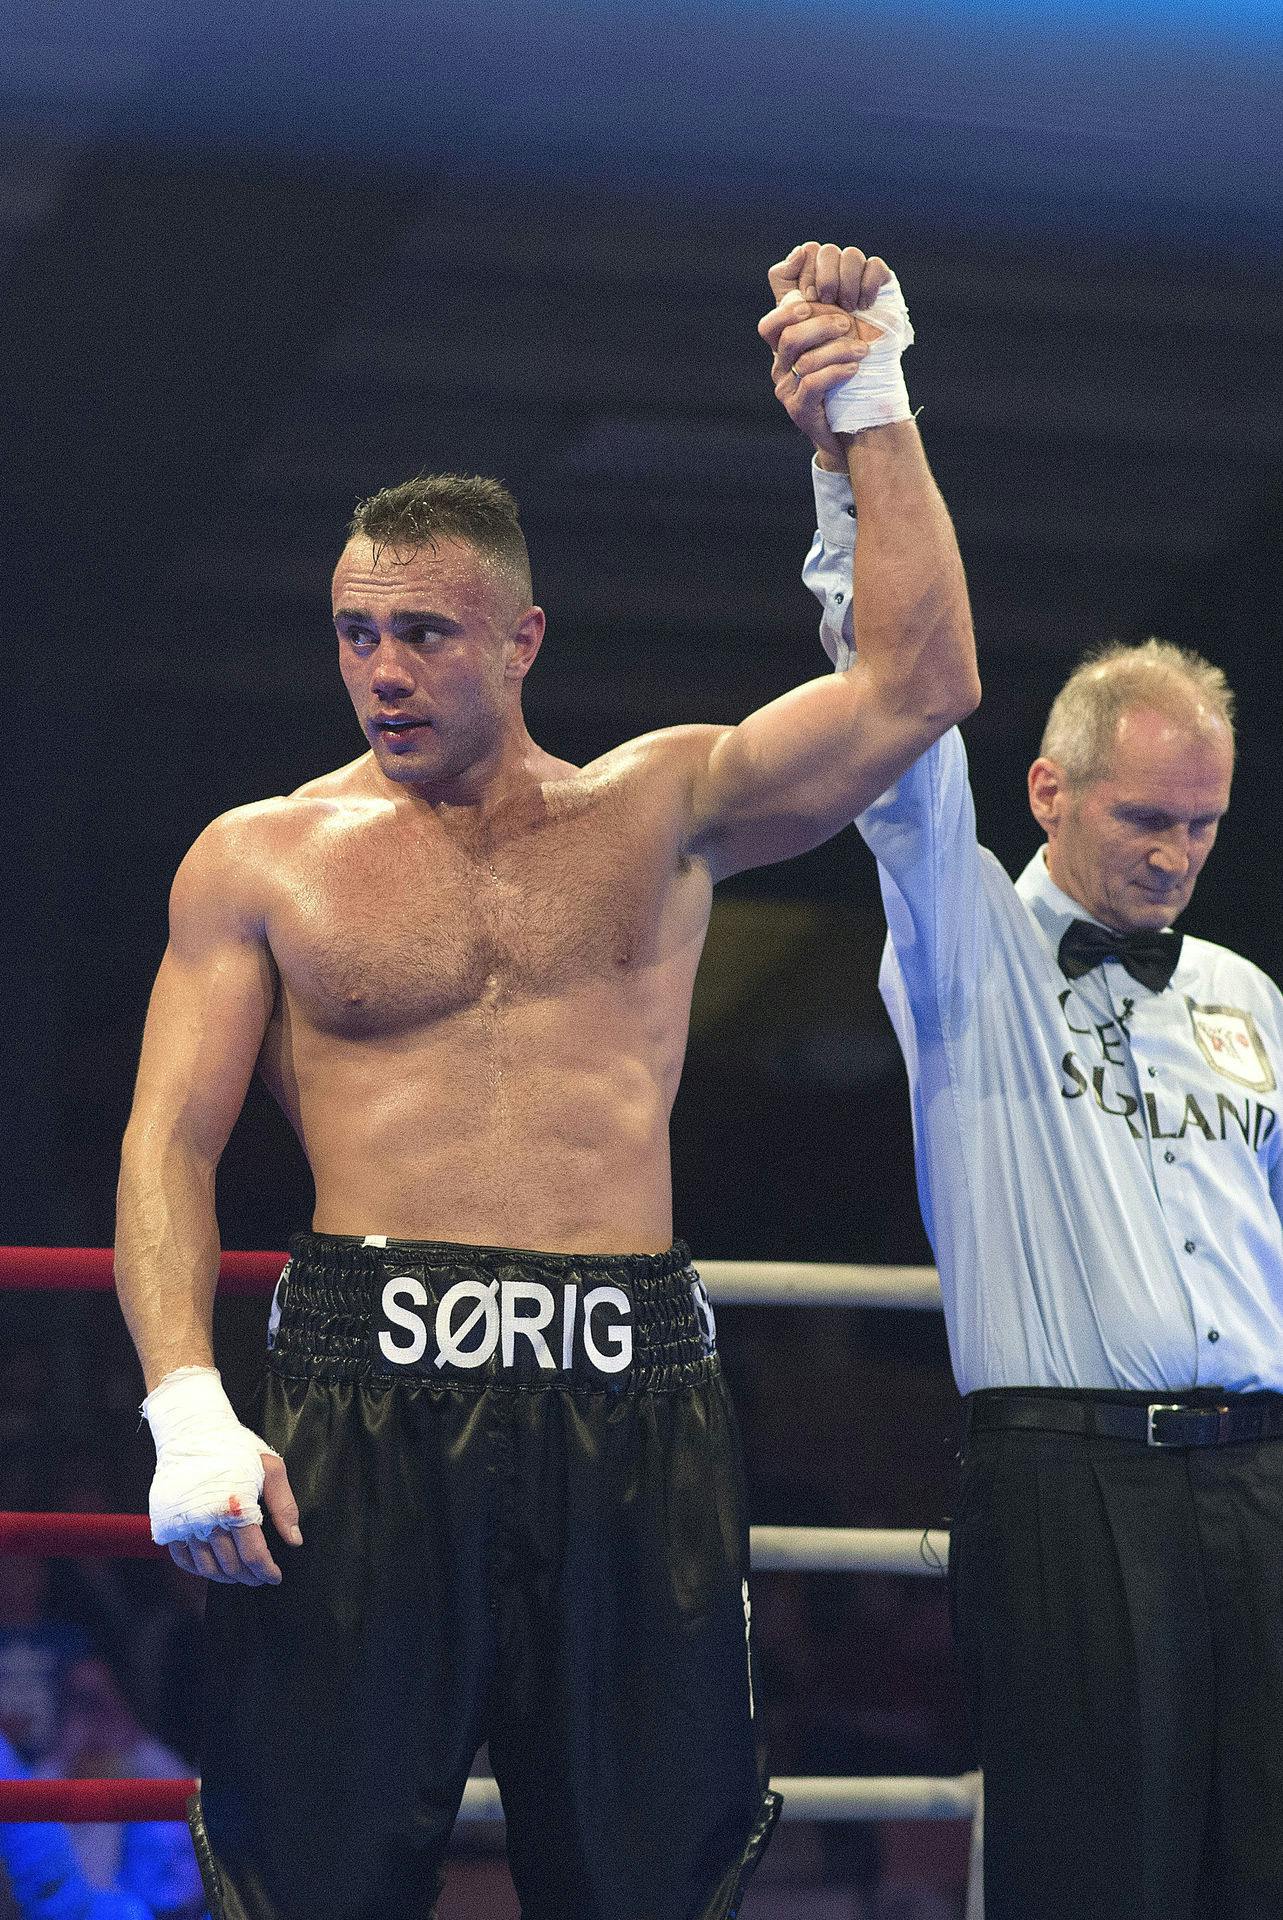 Tobias Sørig er tidligere bokser og kender derfor til alt, hvad Sarah Mahfoud går igennem inden en stor kamp.